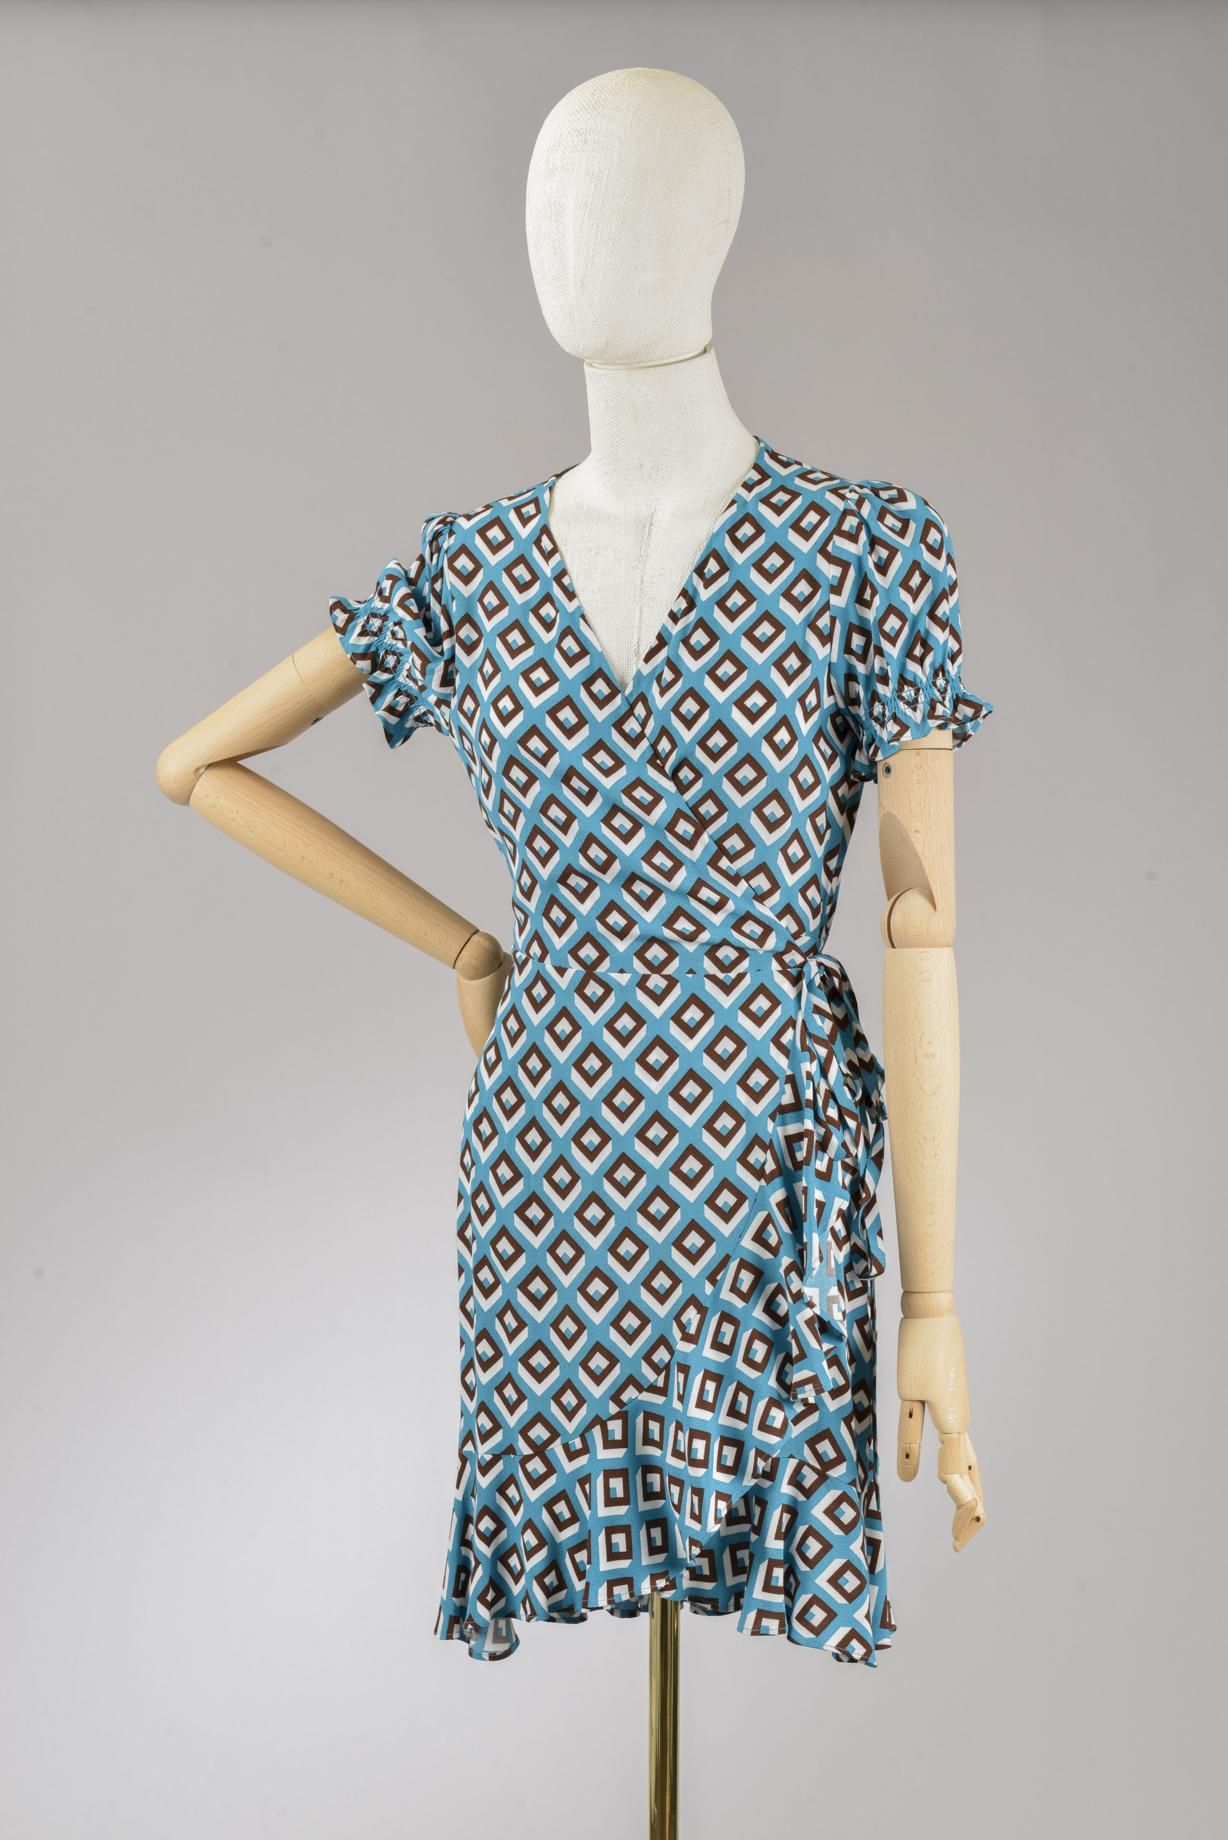 Null *尺寸XS DVF - Diane Von Fürstenberg

套装包括。

-Viscose 绉绸连衣裙，"DVF Emilia "型号，蓝色&hellip;